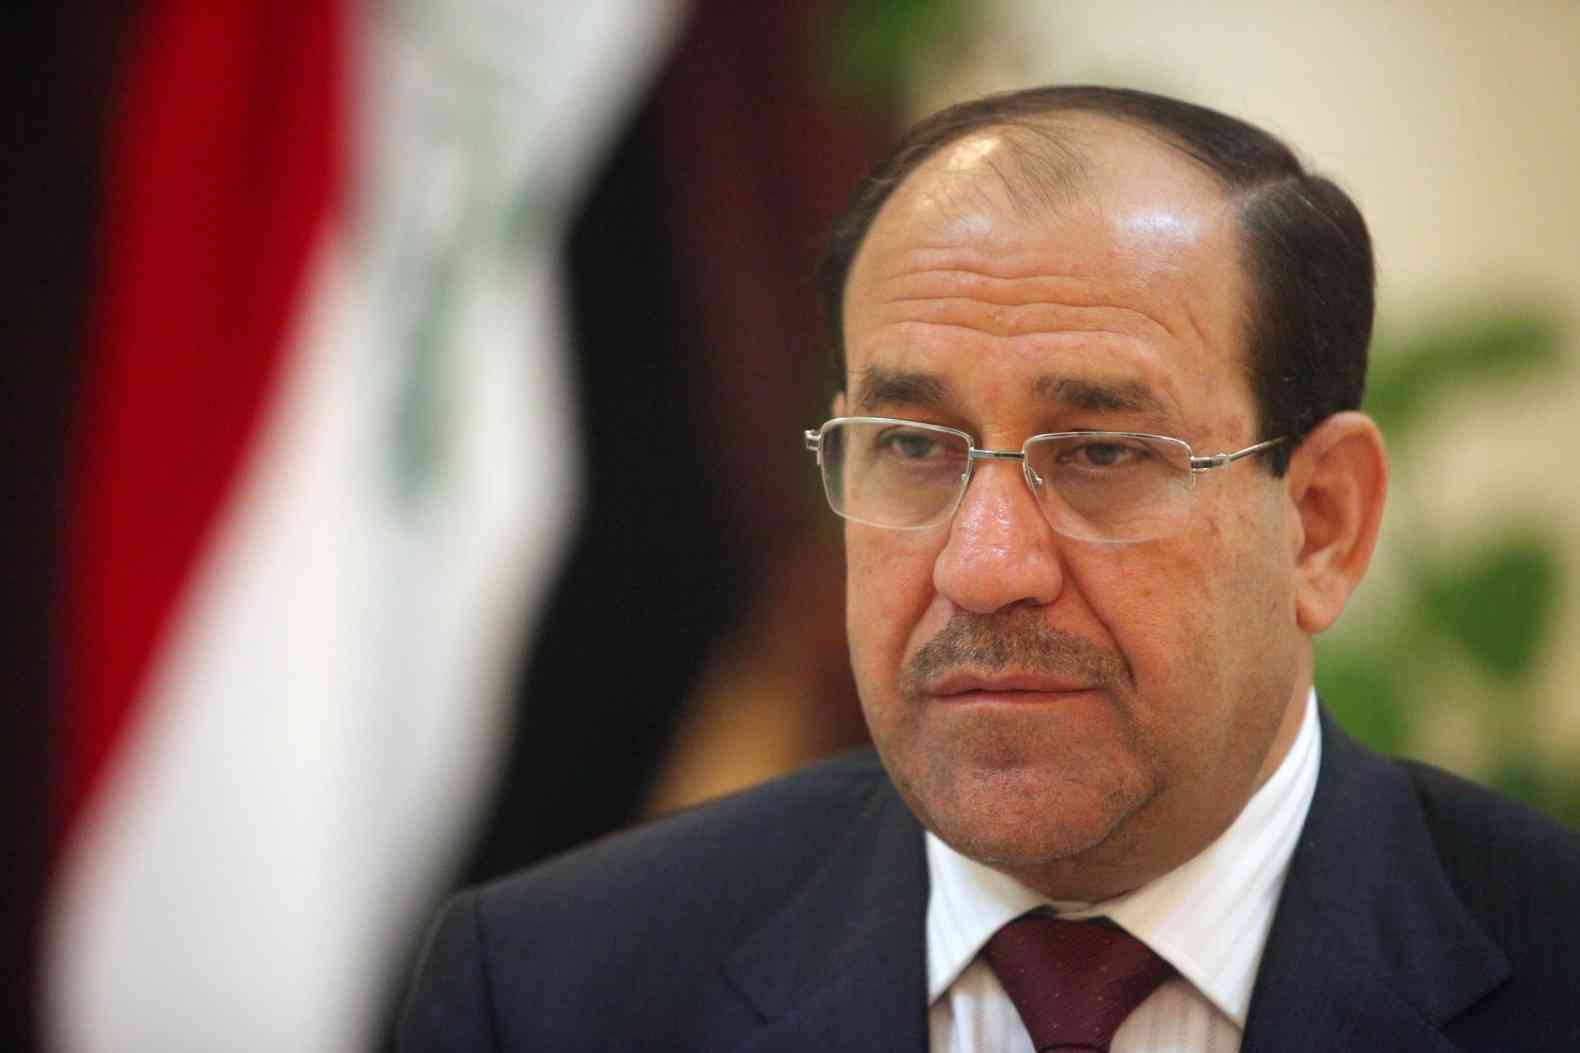  المالكي: العراق لن يكون منطلقا للاعتداء على الاخرين 